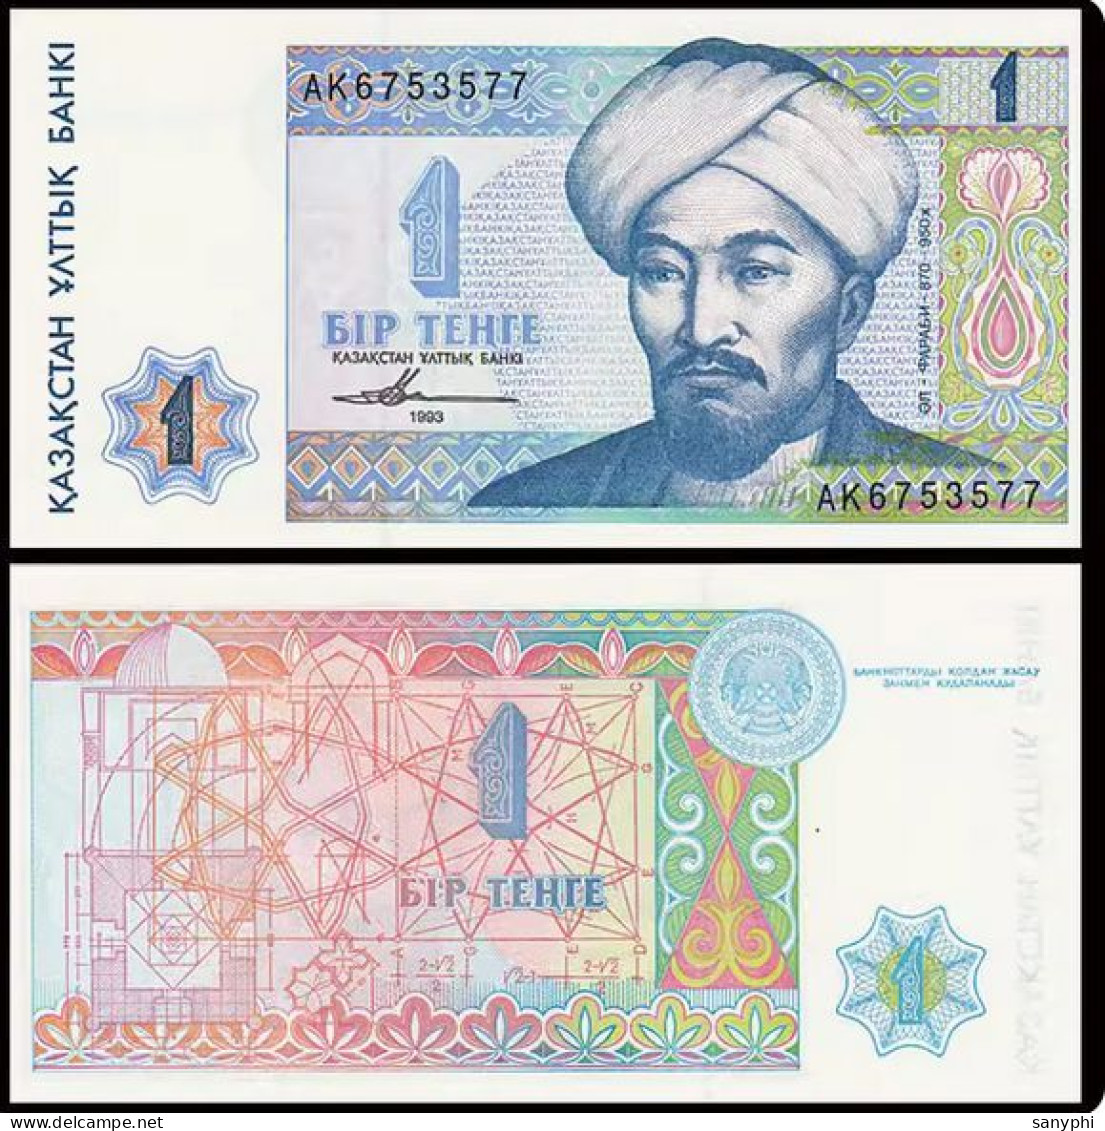 Kazakhstan Bank 1993 1T - Kazakhstan